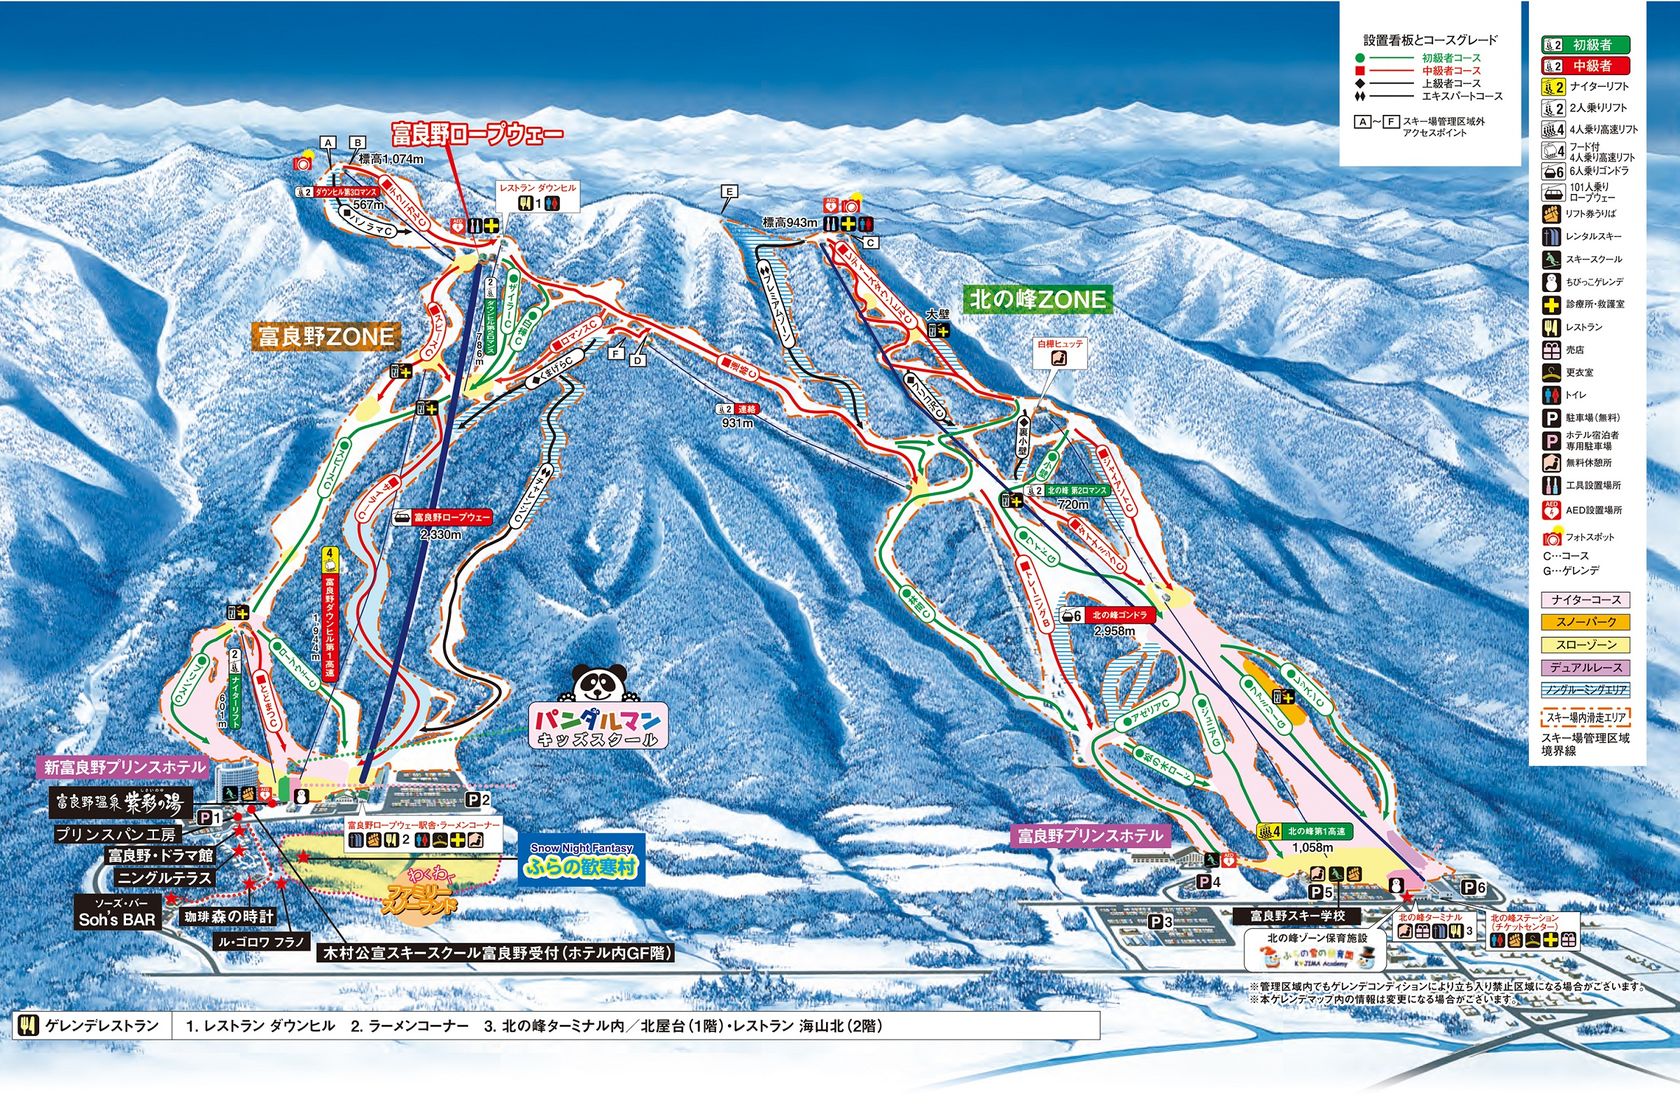 21 富良野スキー場 格安スキーツアー スノーボードツアー 福岡発 格安旅行のジェイトリップ